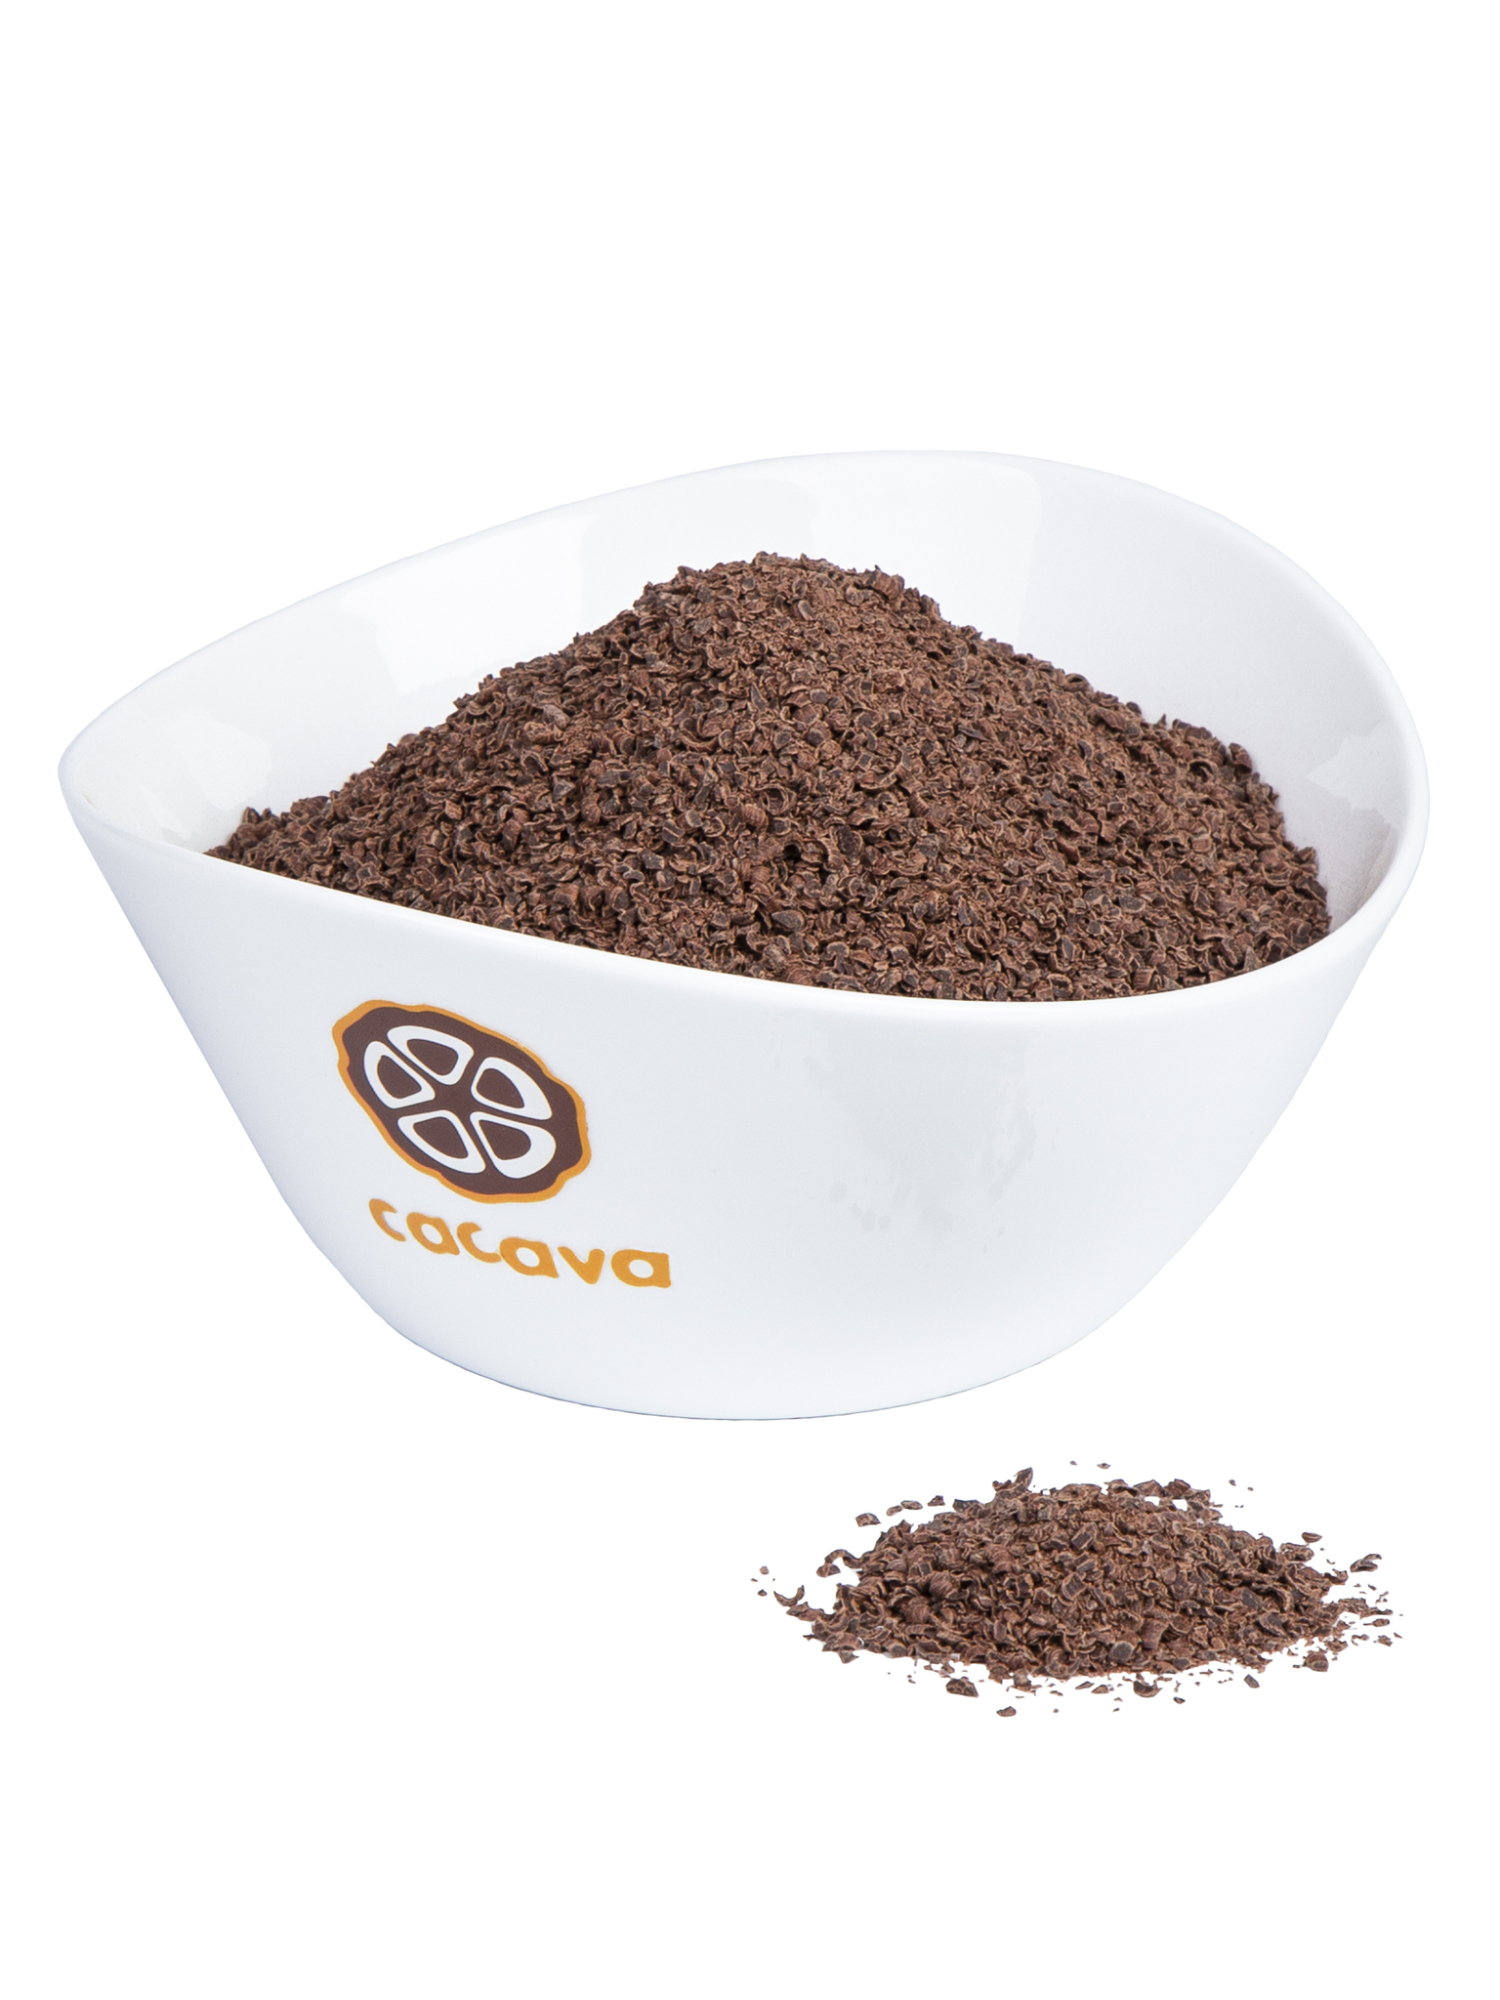 Горячий шоколад (Бразилия, Fazenda Camboa), 100% какао, 300г